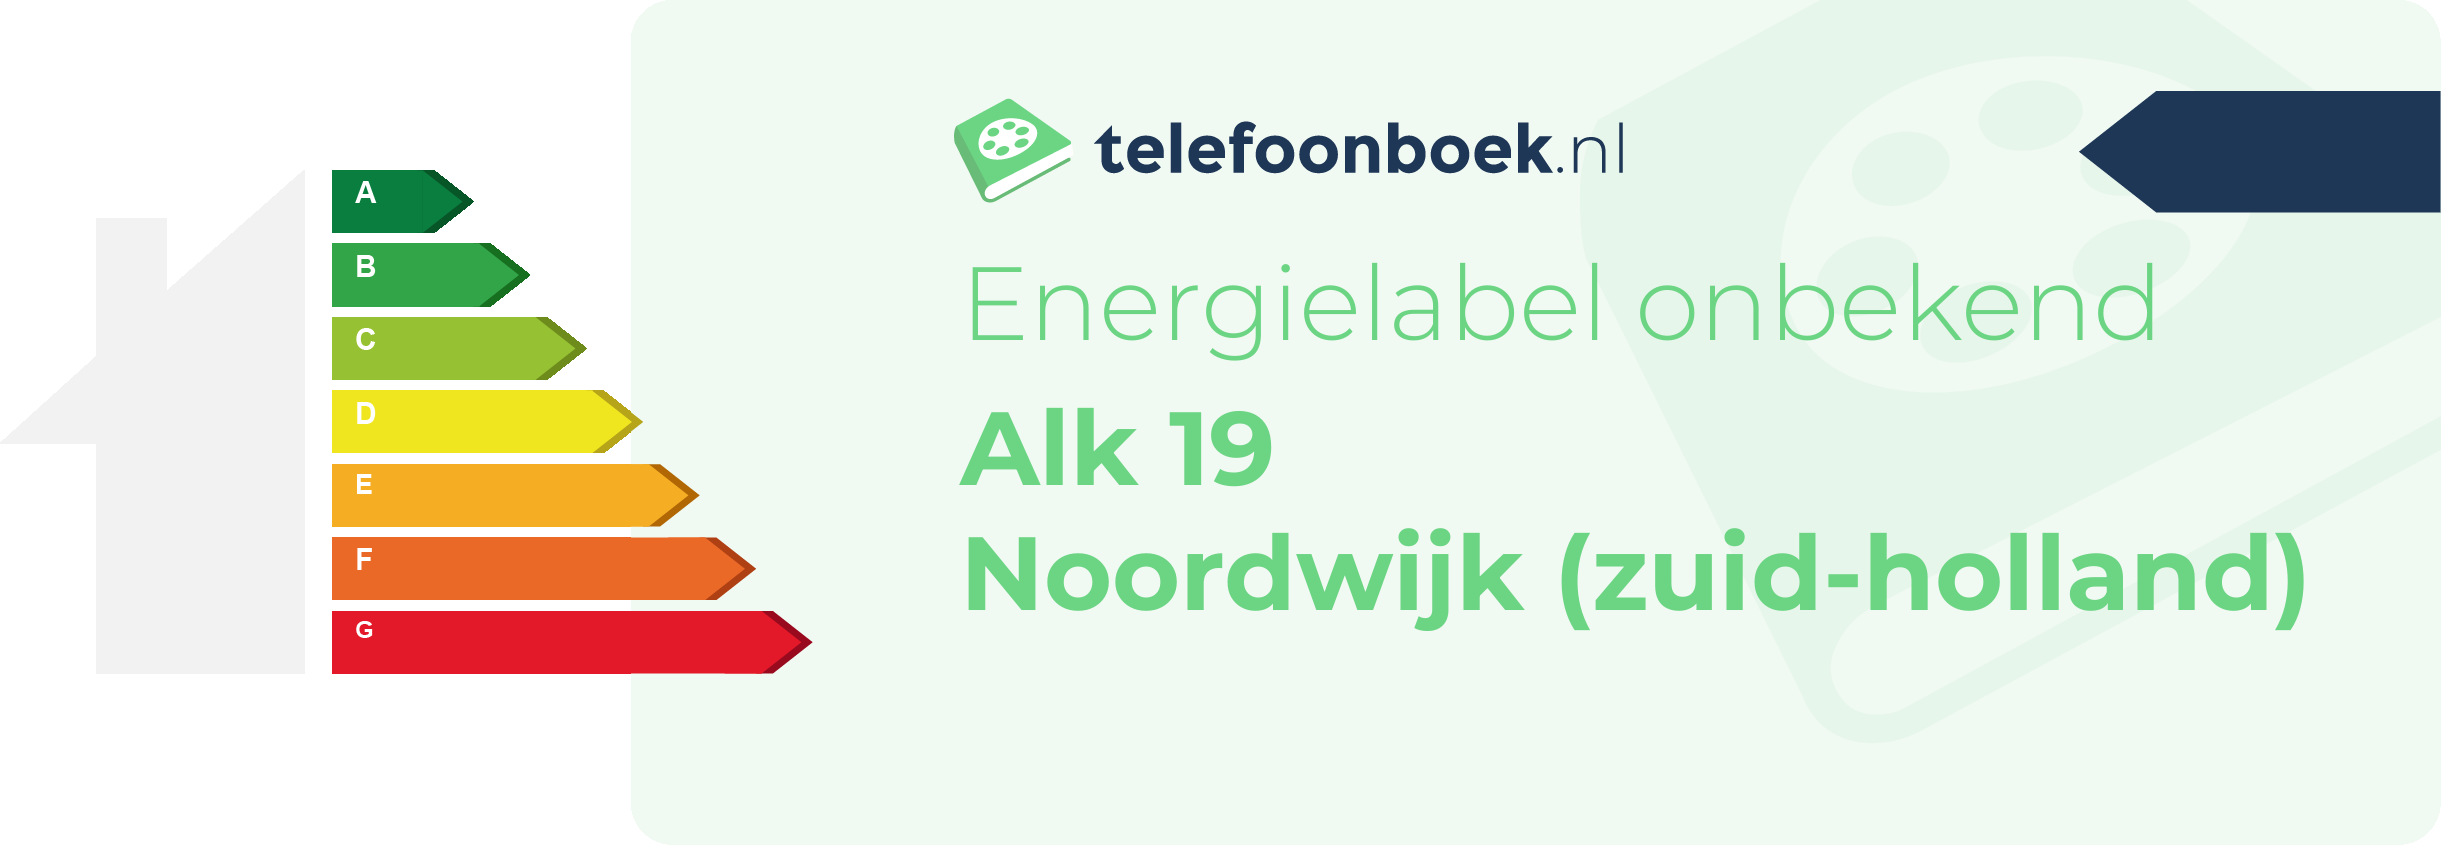 Energielabel Alk 19 Noordwijk (Zuid-Holland)